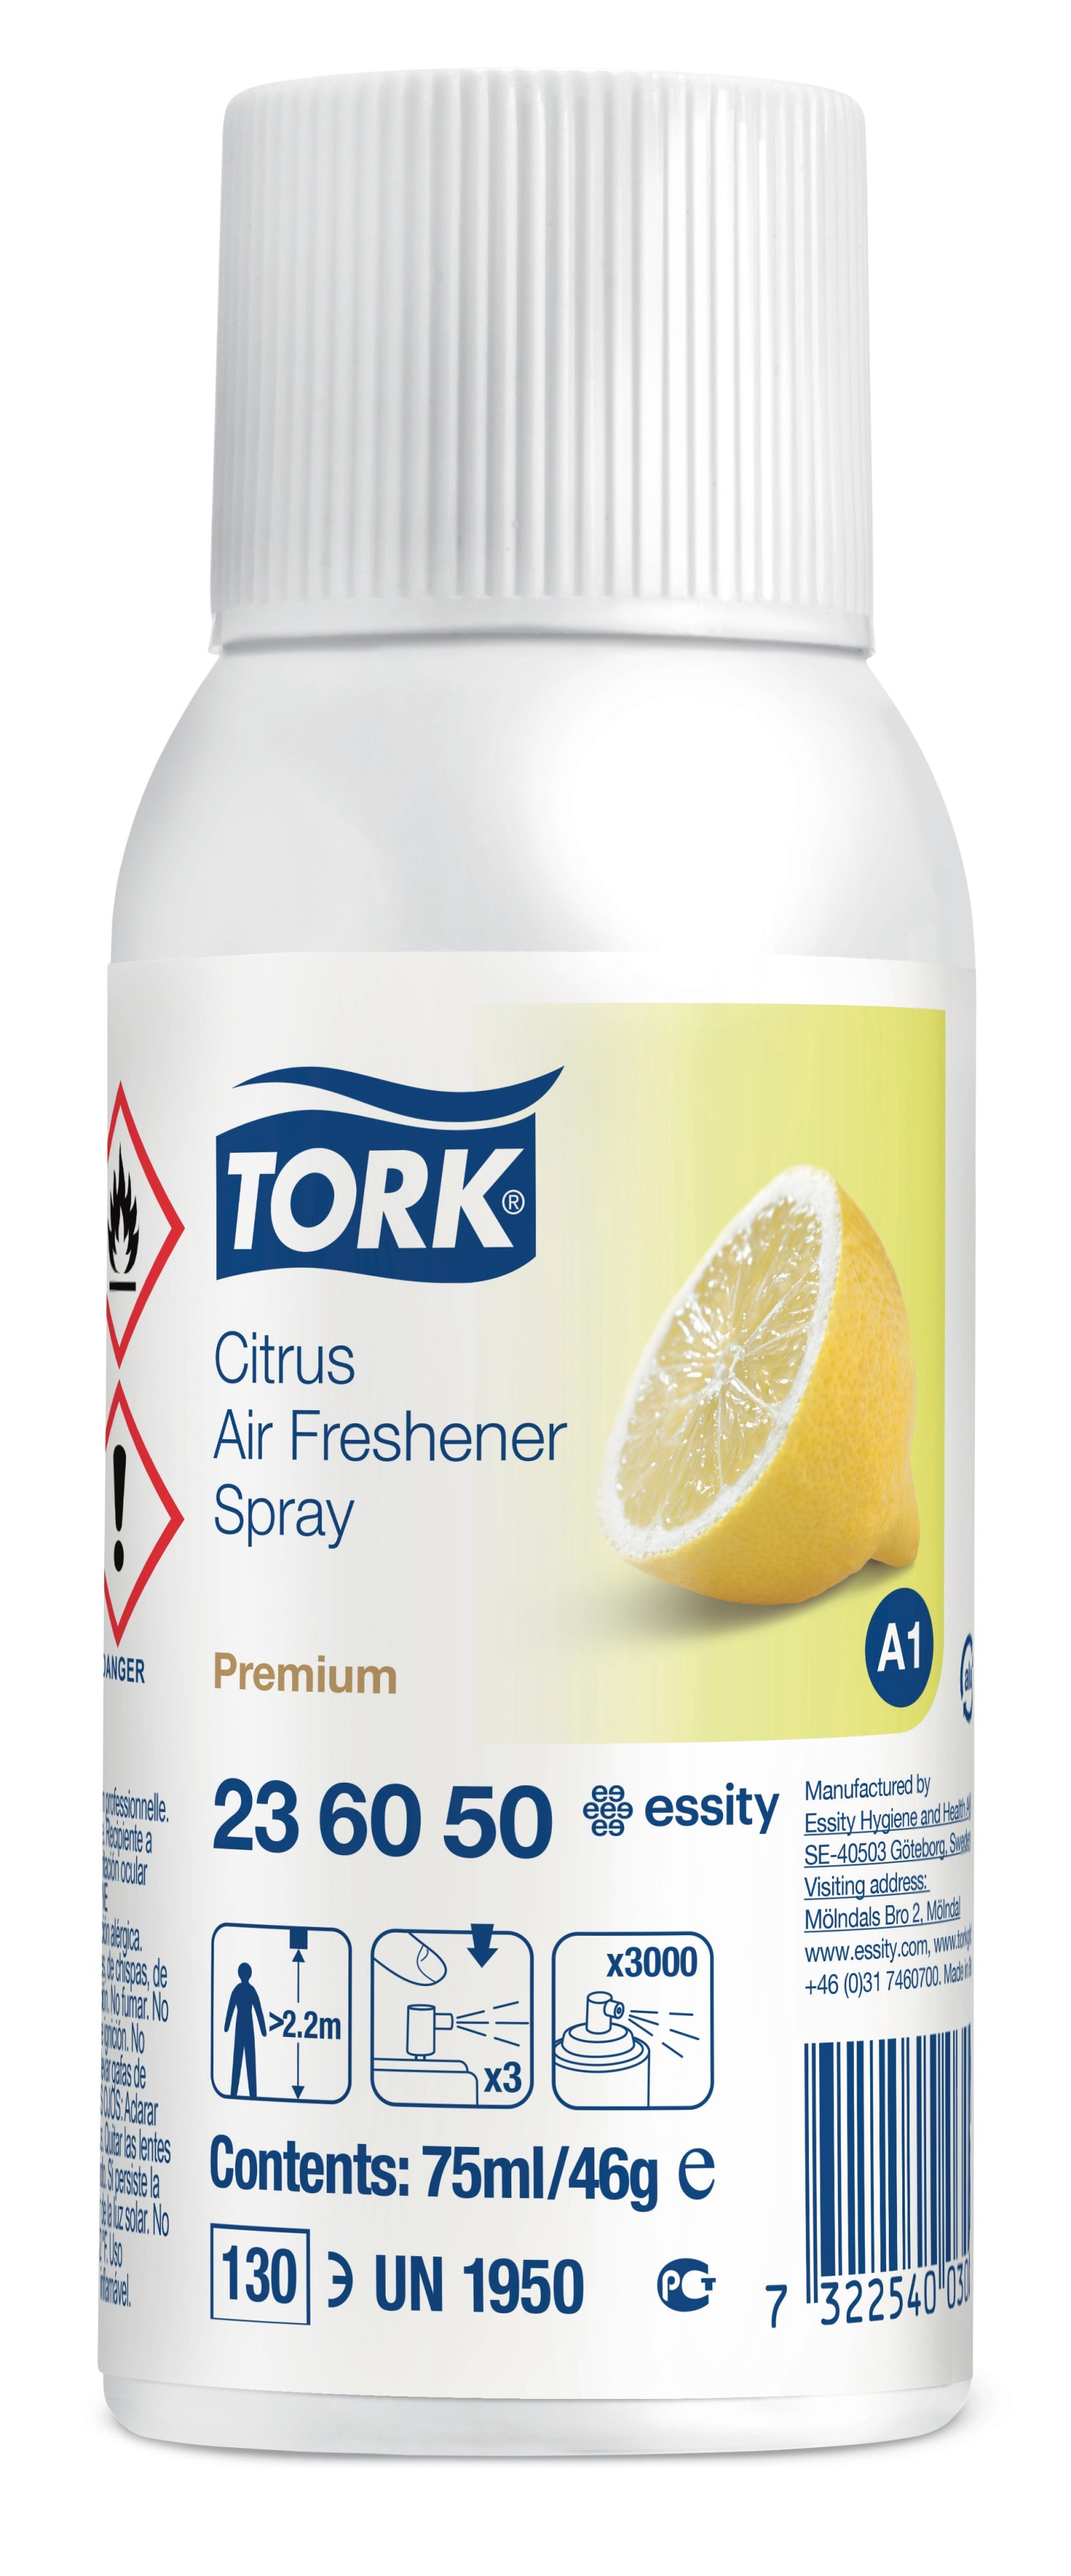 Billede af TORK Airfreshener A1 Citrus 12 stk Refill (236050)